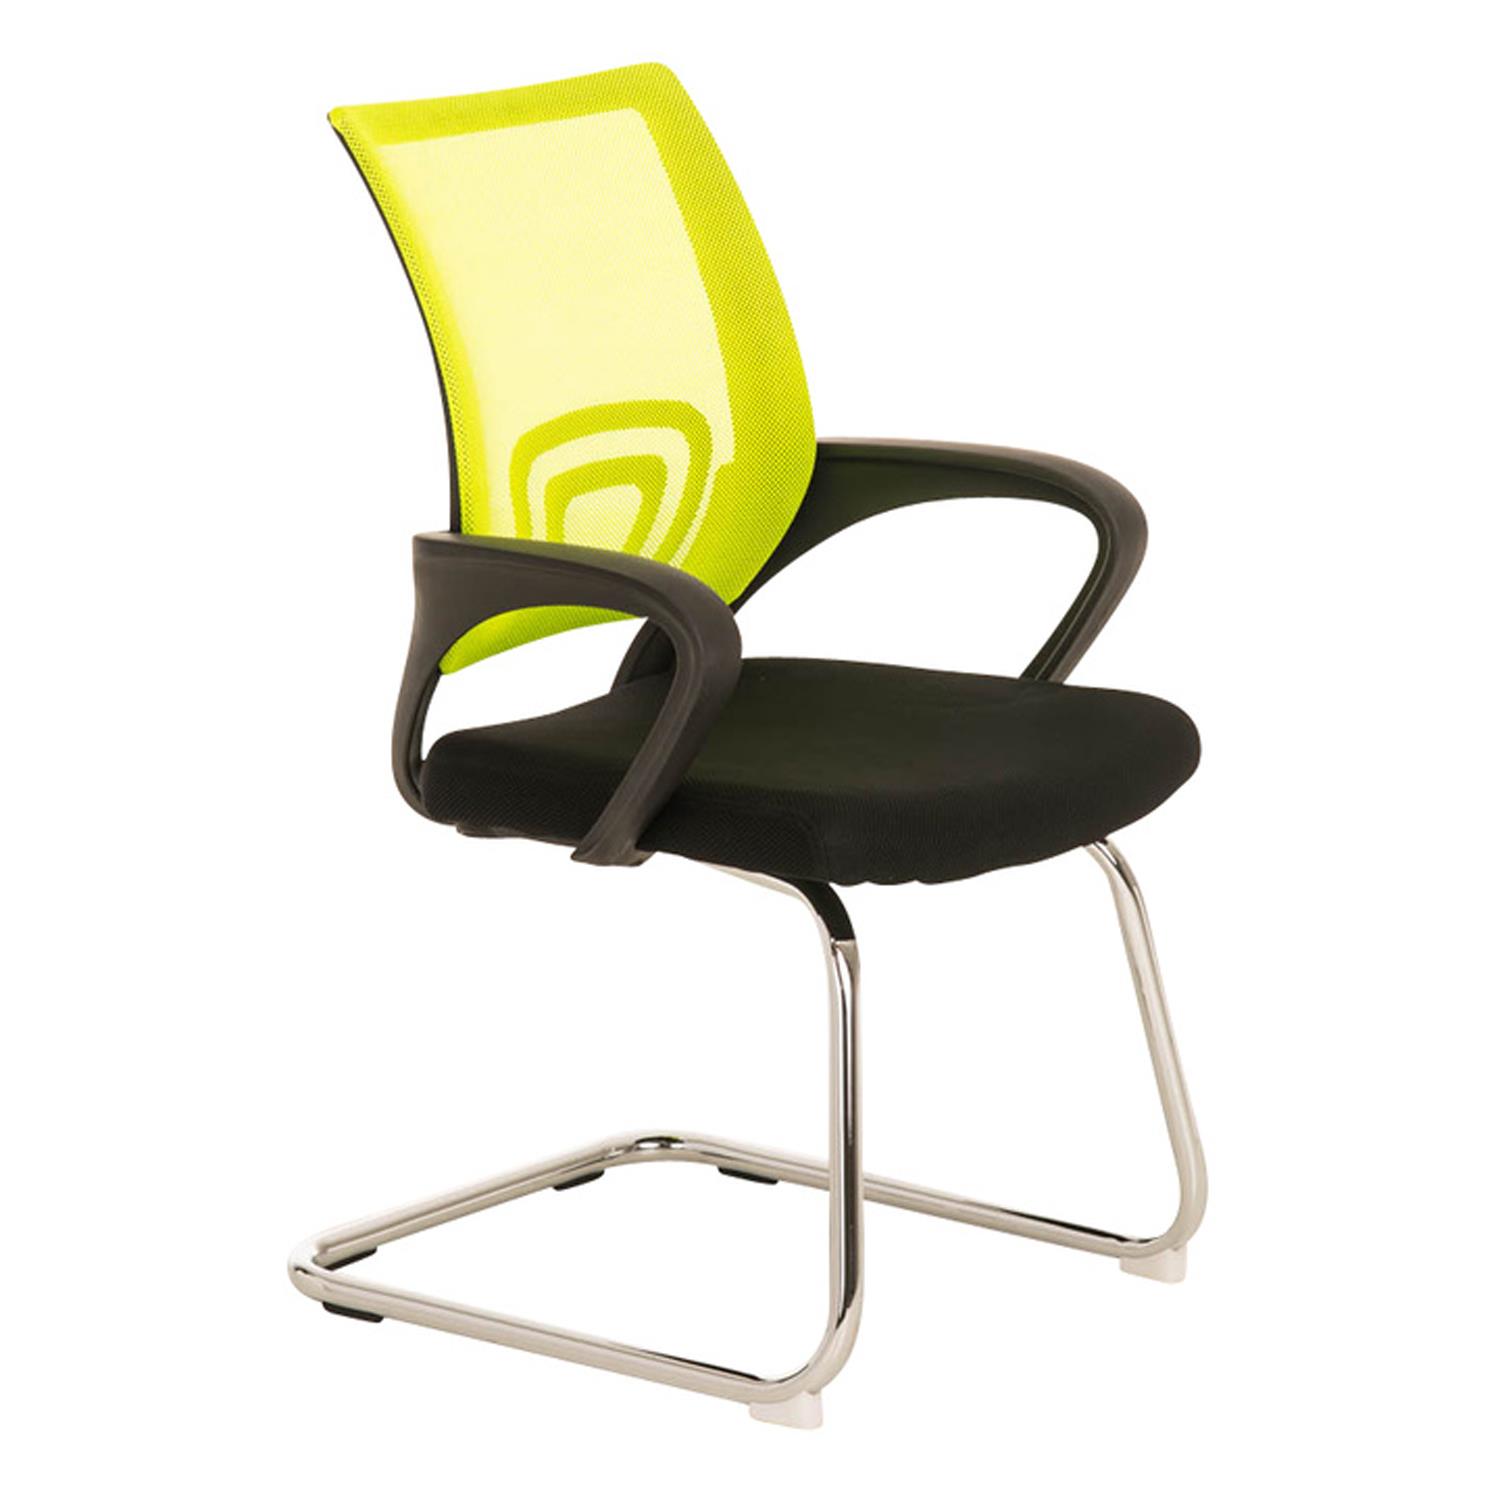 Konferenzstuhl SEOUL V, schönes Design, große gepolsterte Sitzfläche, Farbe Gelb